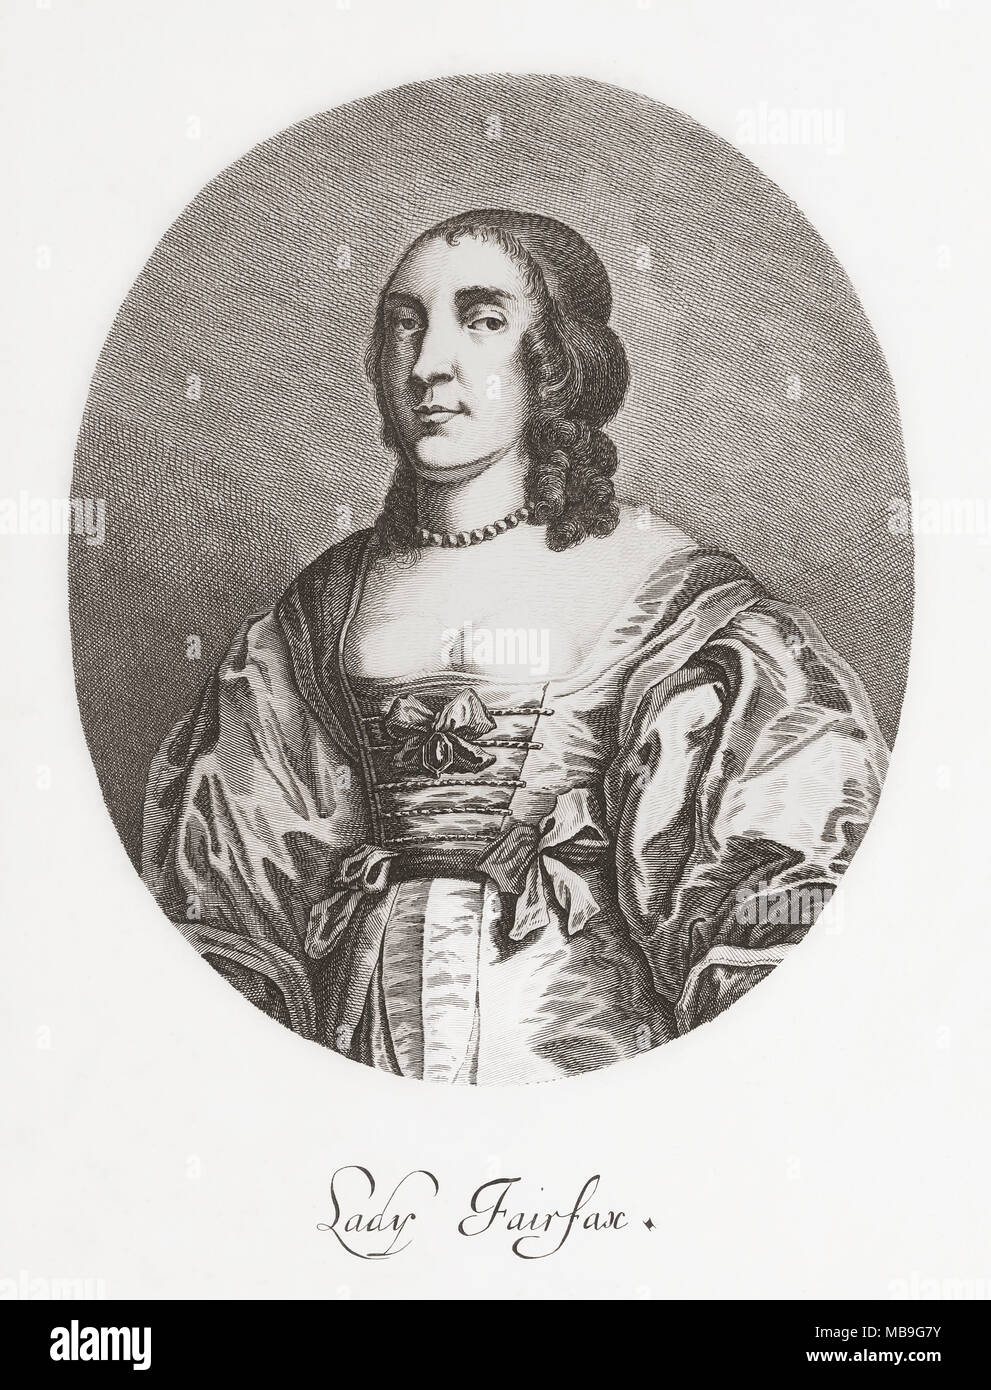 Anne, Dame Fairfax, 1617/8-1665. La noblesse anglaise. La femme de Thomas Fairfax, 3e Lord Fairfax de Cameron. De Woodburn's Galerie de Portraits rares, publié en 1816. Banque D'Images